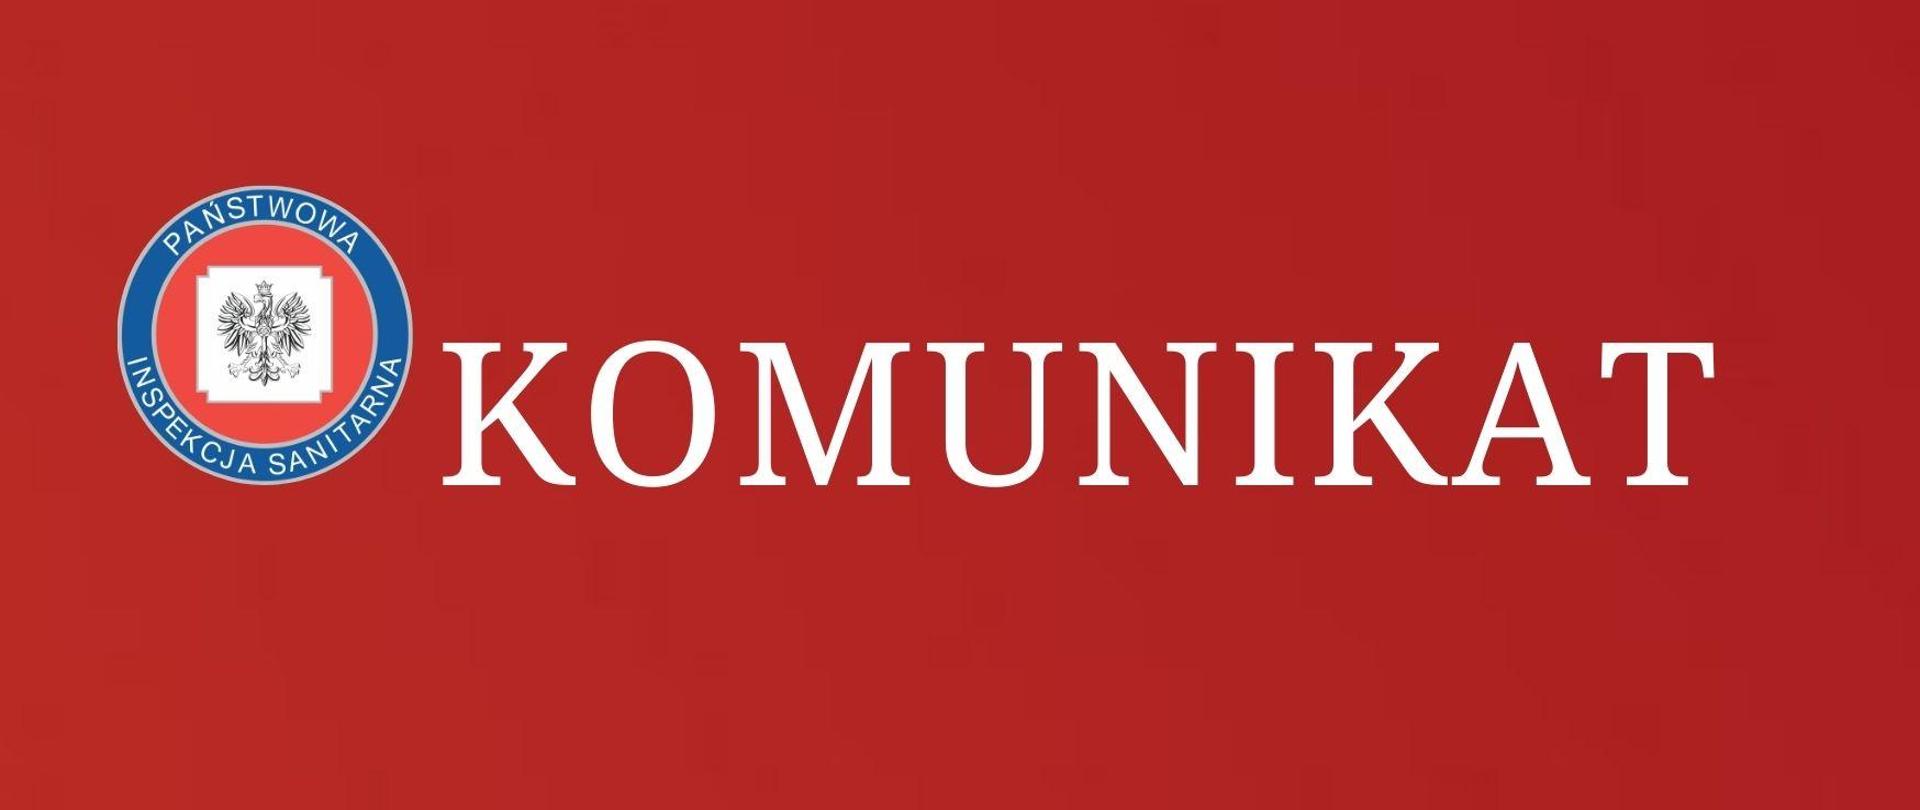 Grafika na czerwonym tle z napisem "Komunikat"